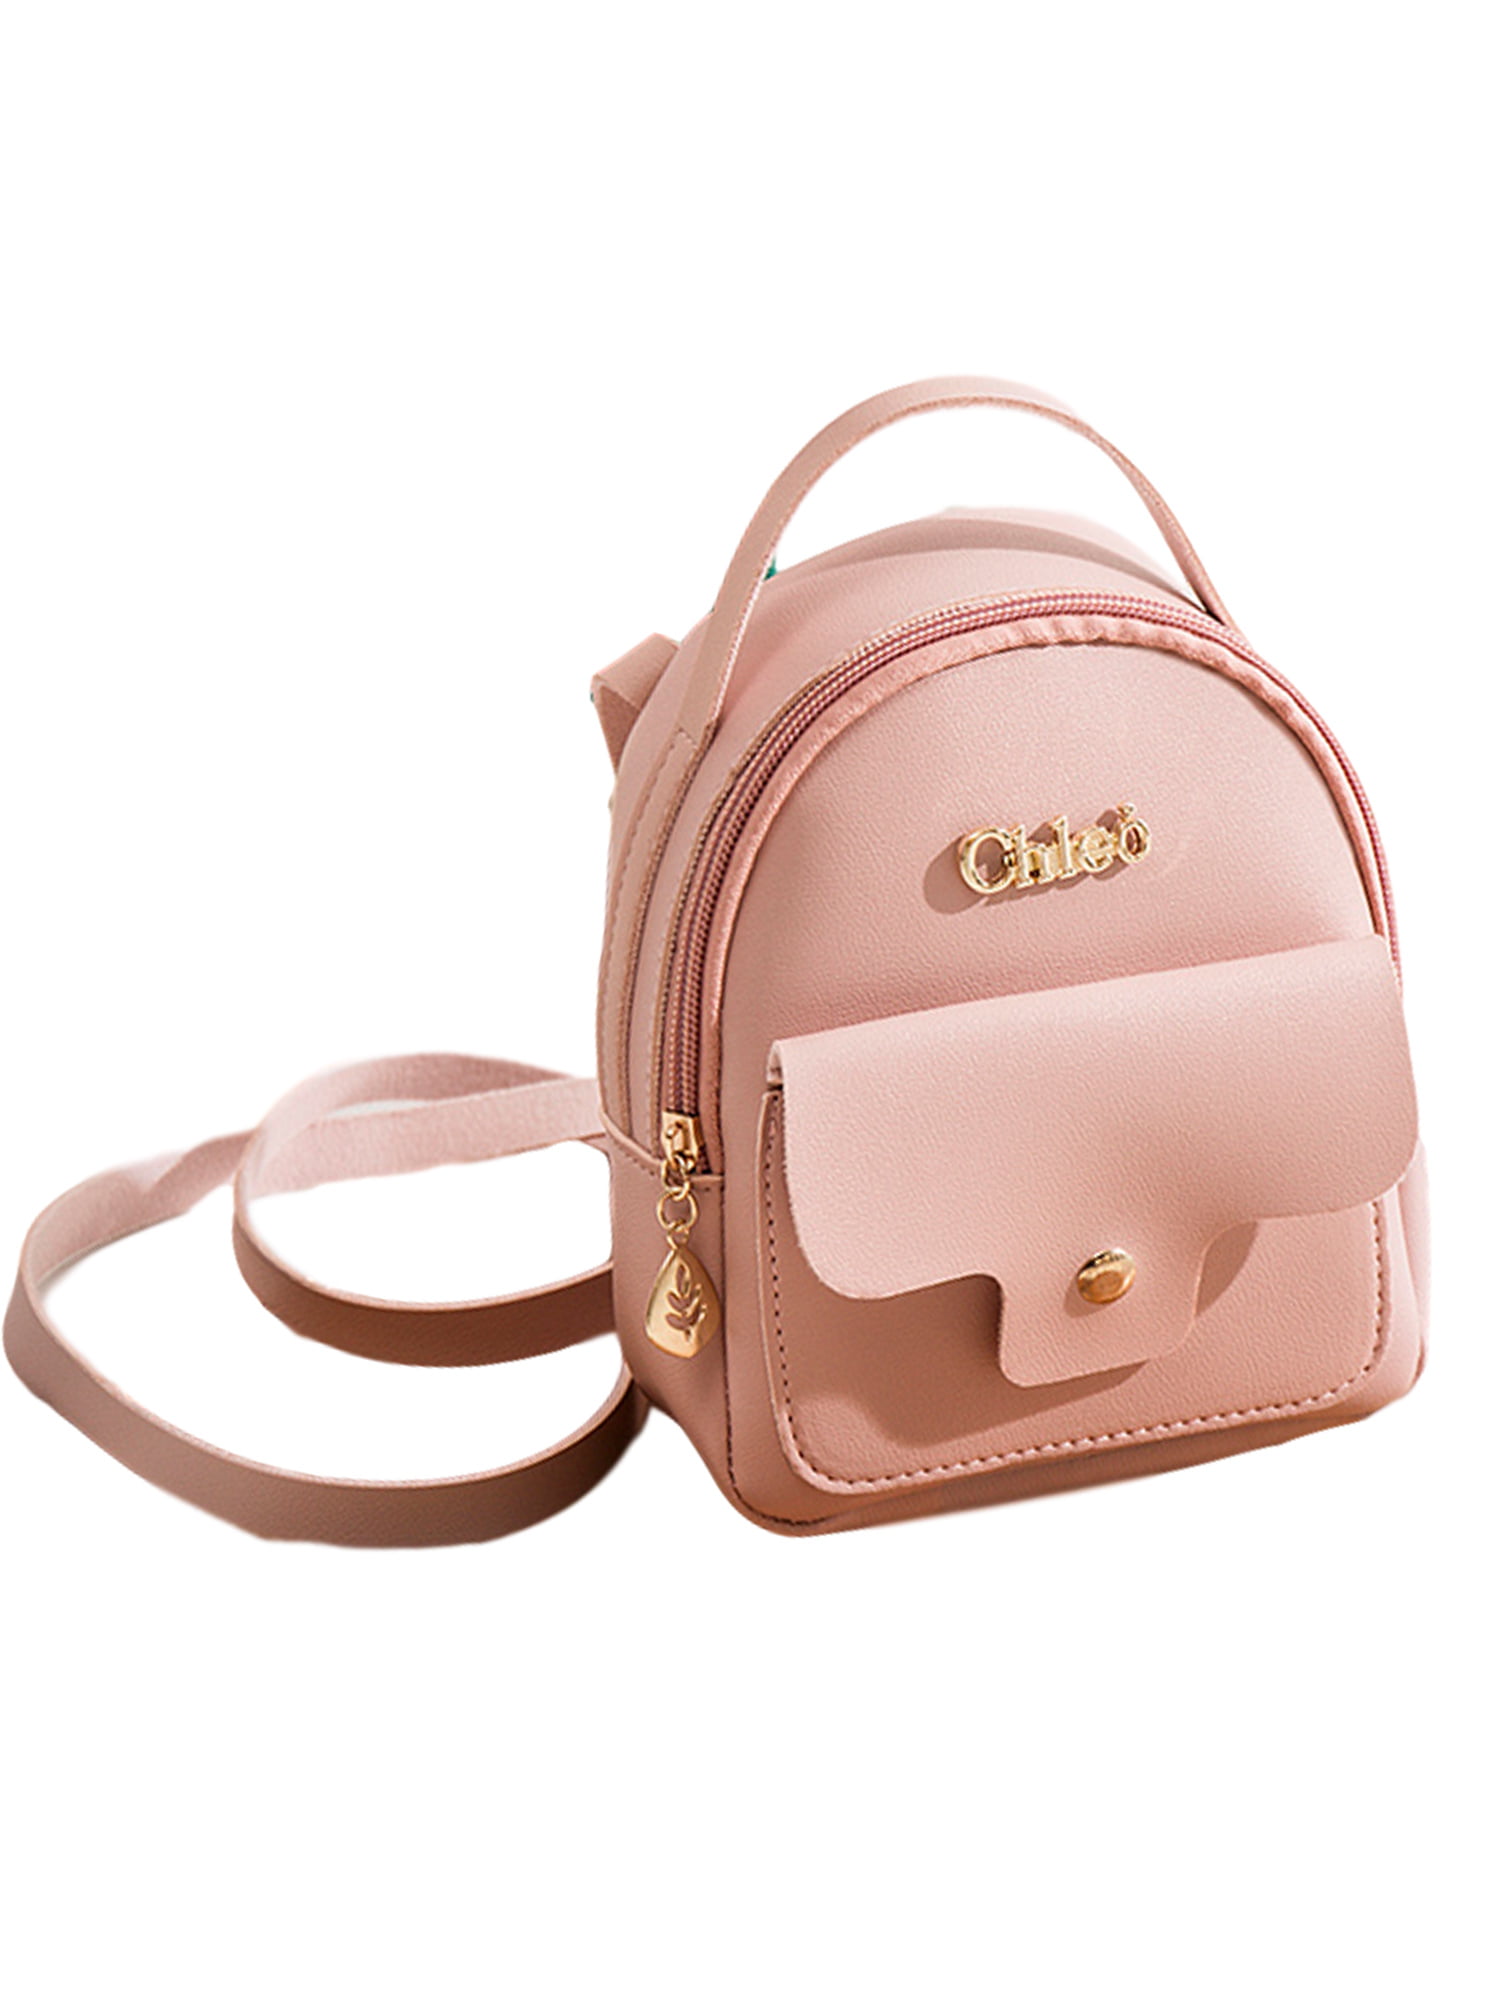 3PCS Women Girl Leather Backpack Travel Handbag Rucksack Shoulder School Bookbag 